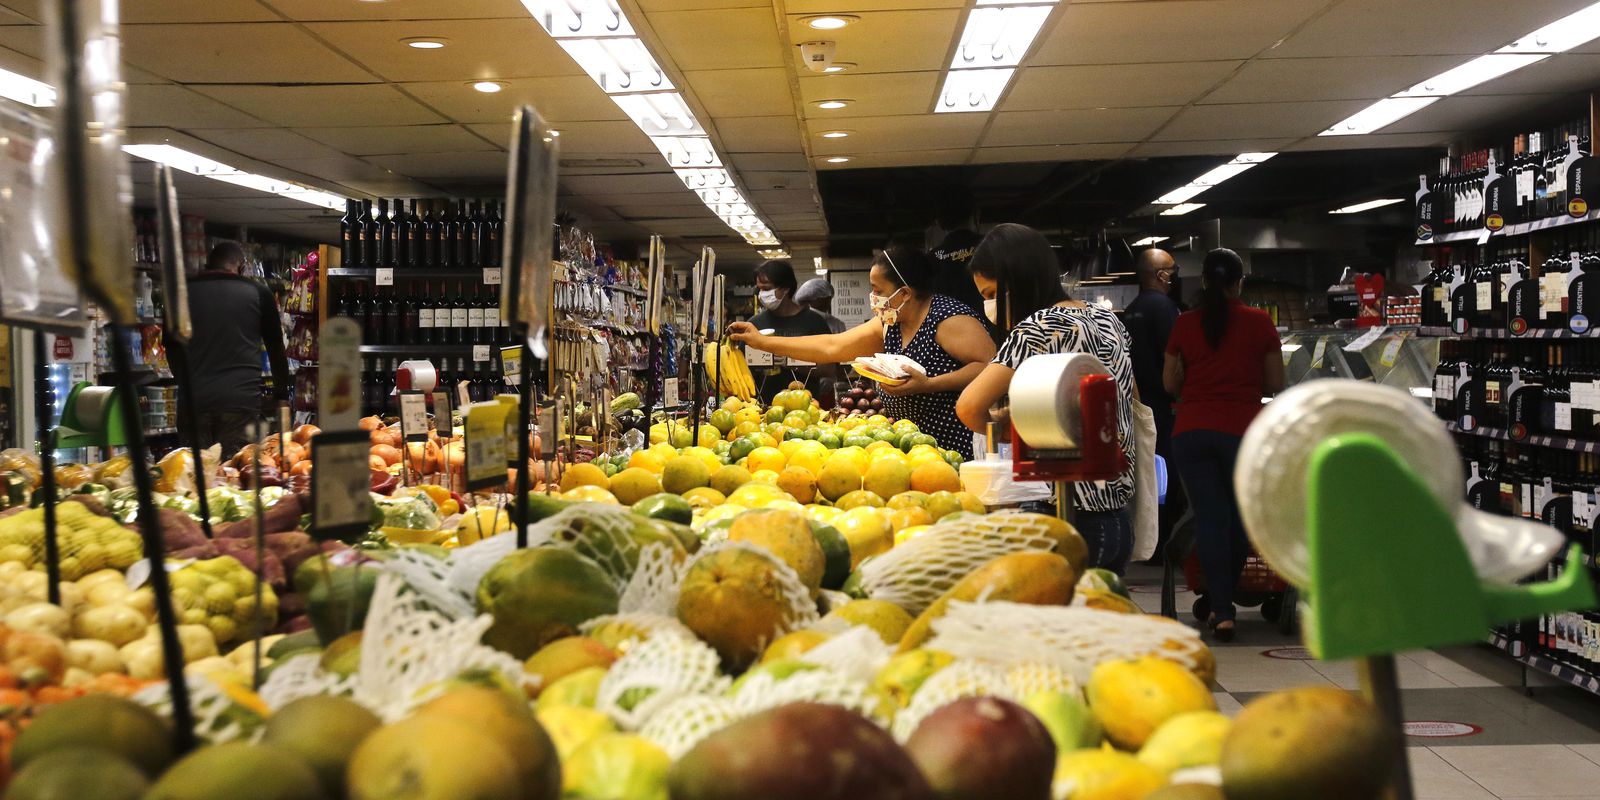 Food basket price rises in nine cities